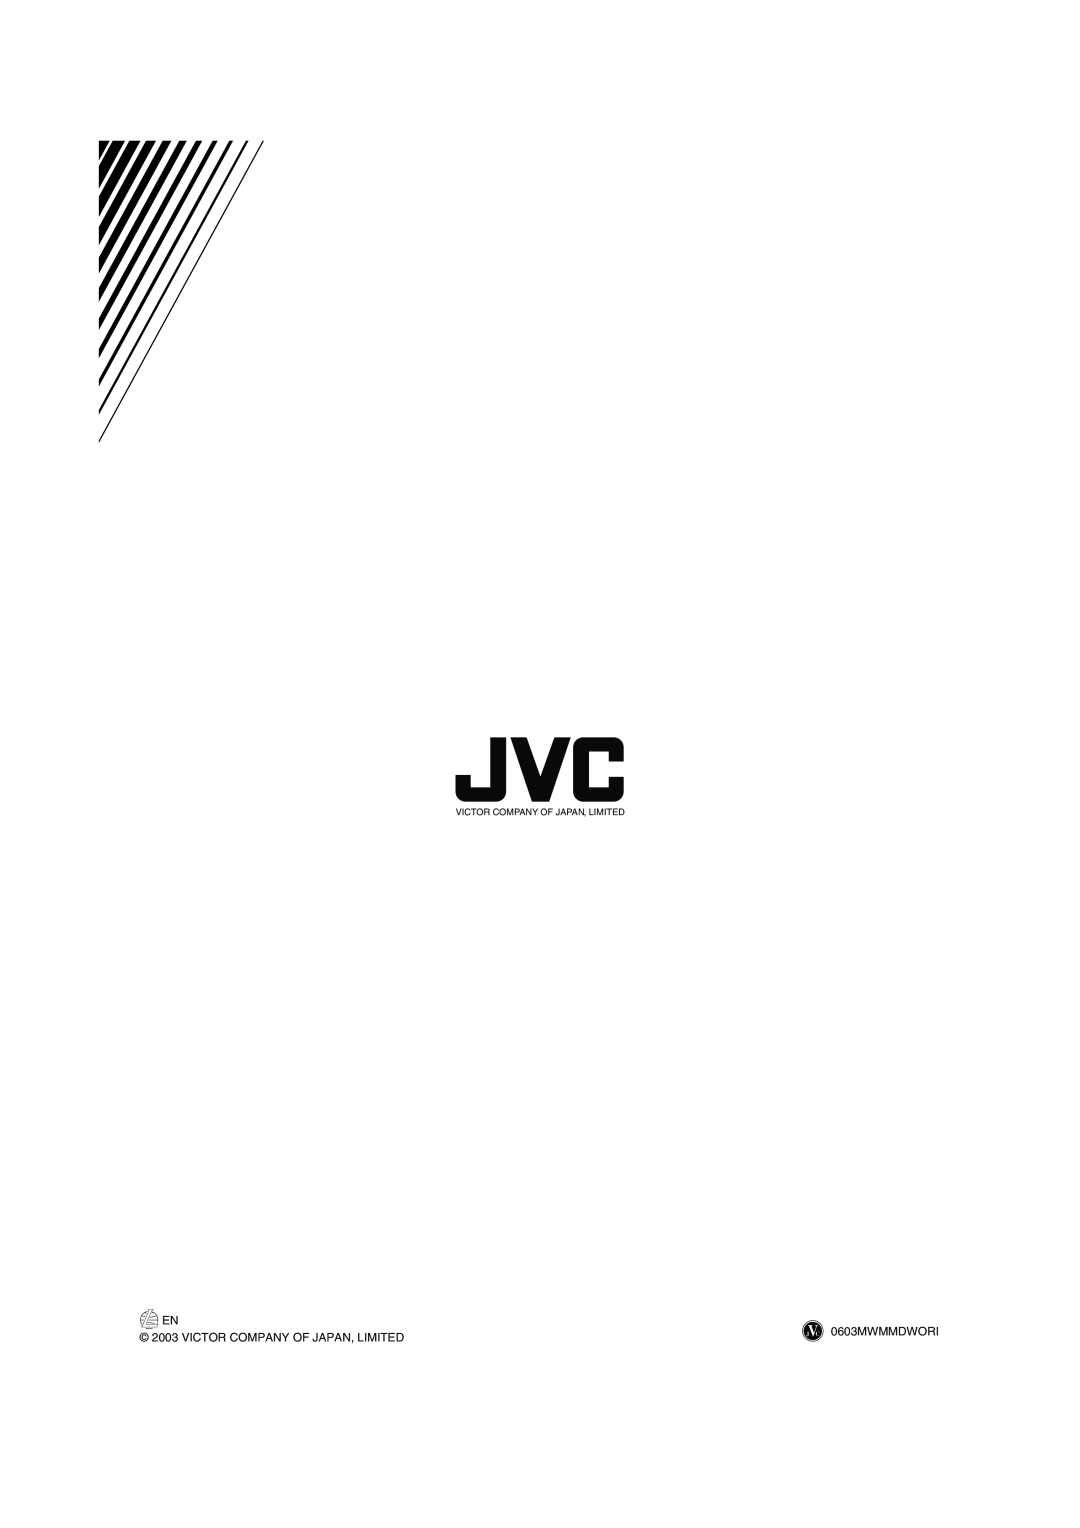 JVC LVT1115-003B manual 0603MWMMDWORI, Victor Company Of Japan, Limited 